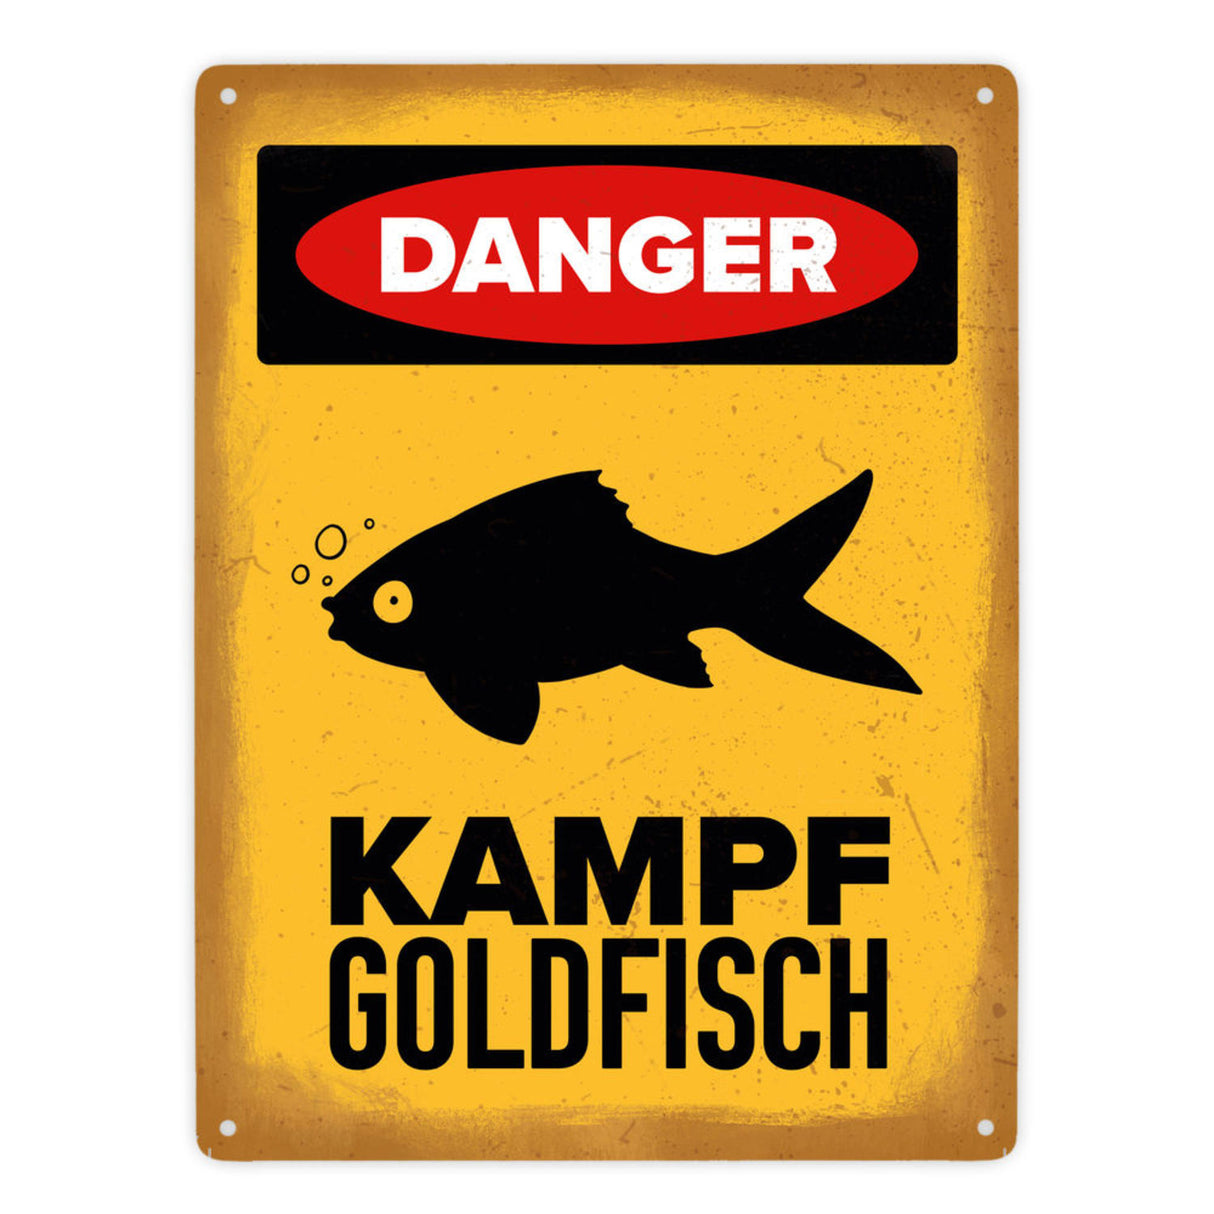 Vorsicht Goldfisch Metallschild mit Goldfisch Silhouette